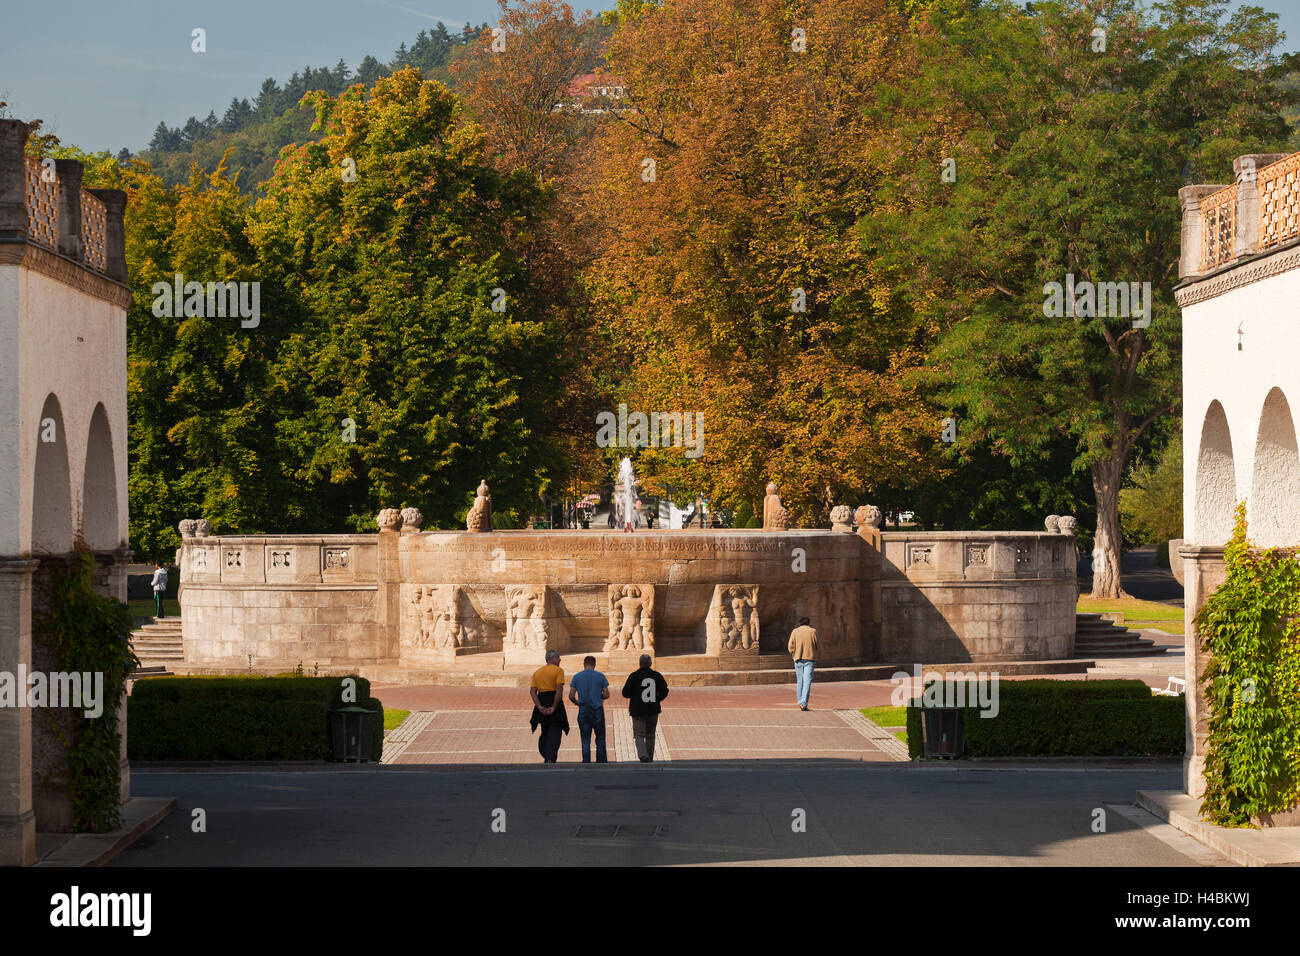 Germany, Hesse, Wetteraukreis, Bad Nauheim, fountain in the Sprudelhof, Stock Photo